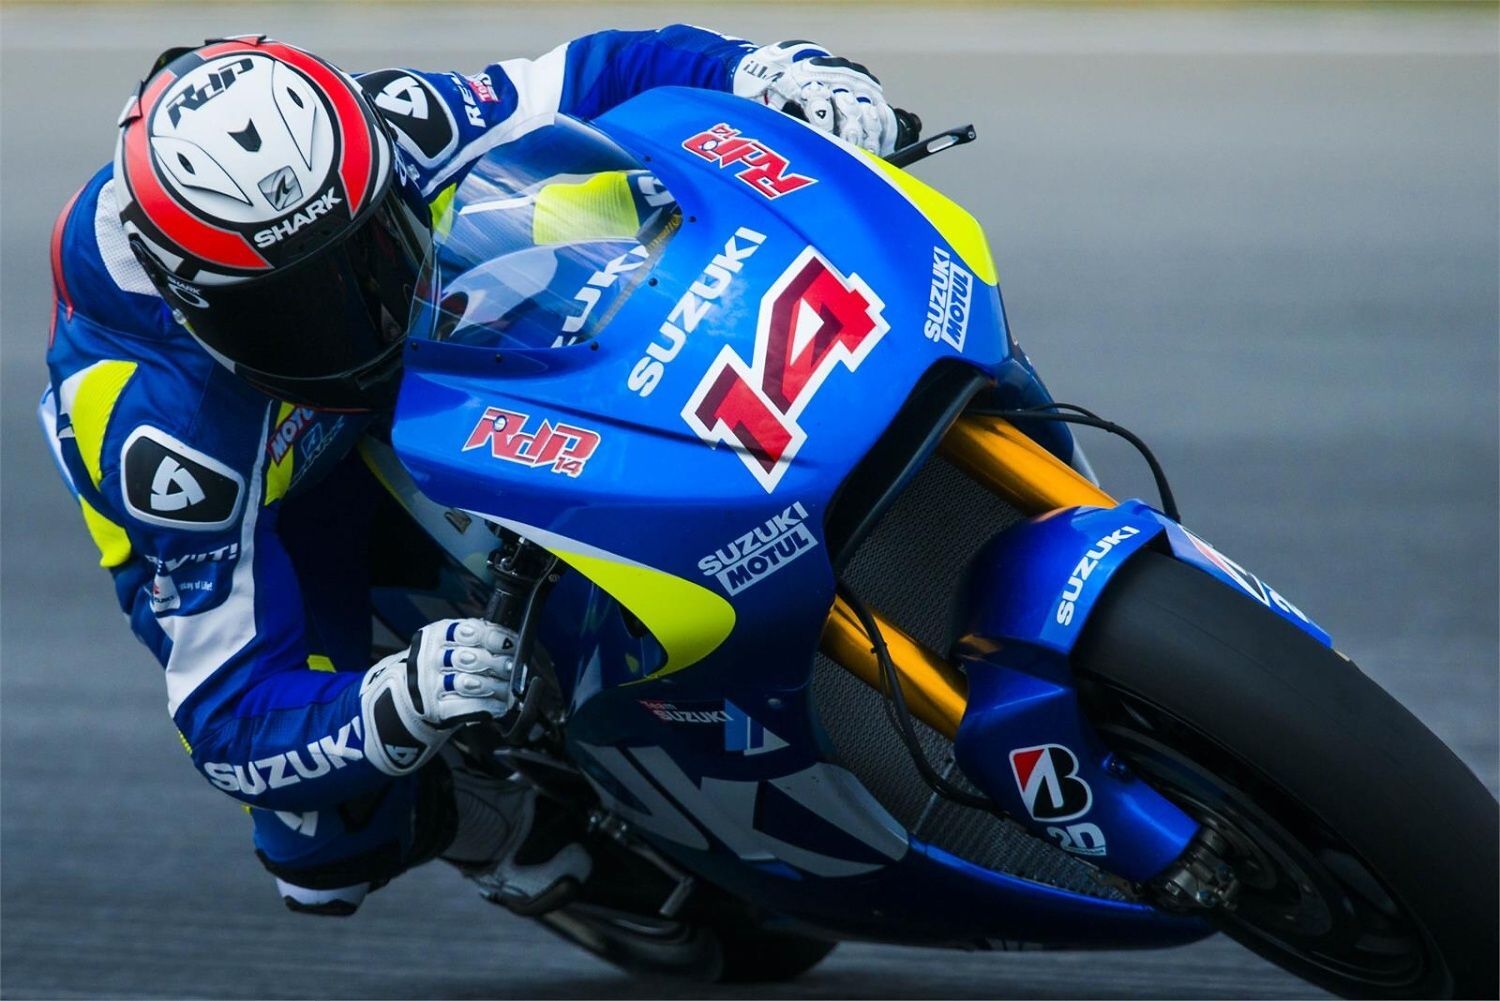 MotoGP: Randy de Puniet, Suzuki